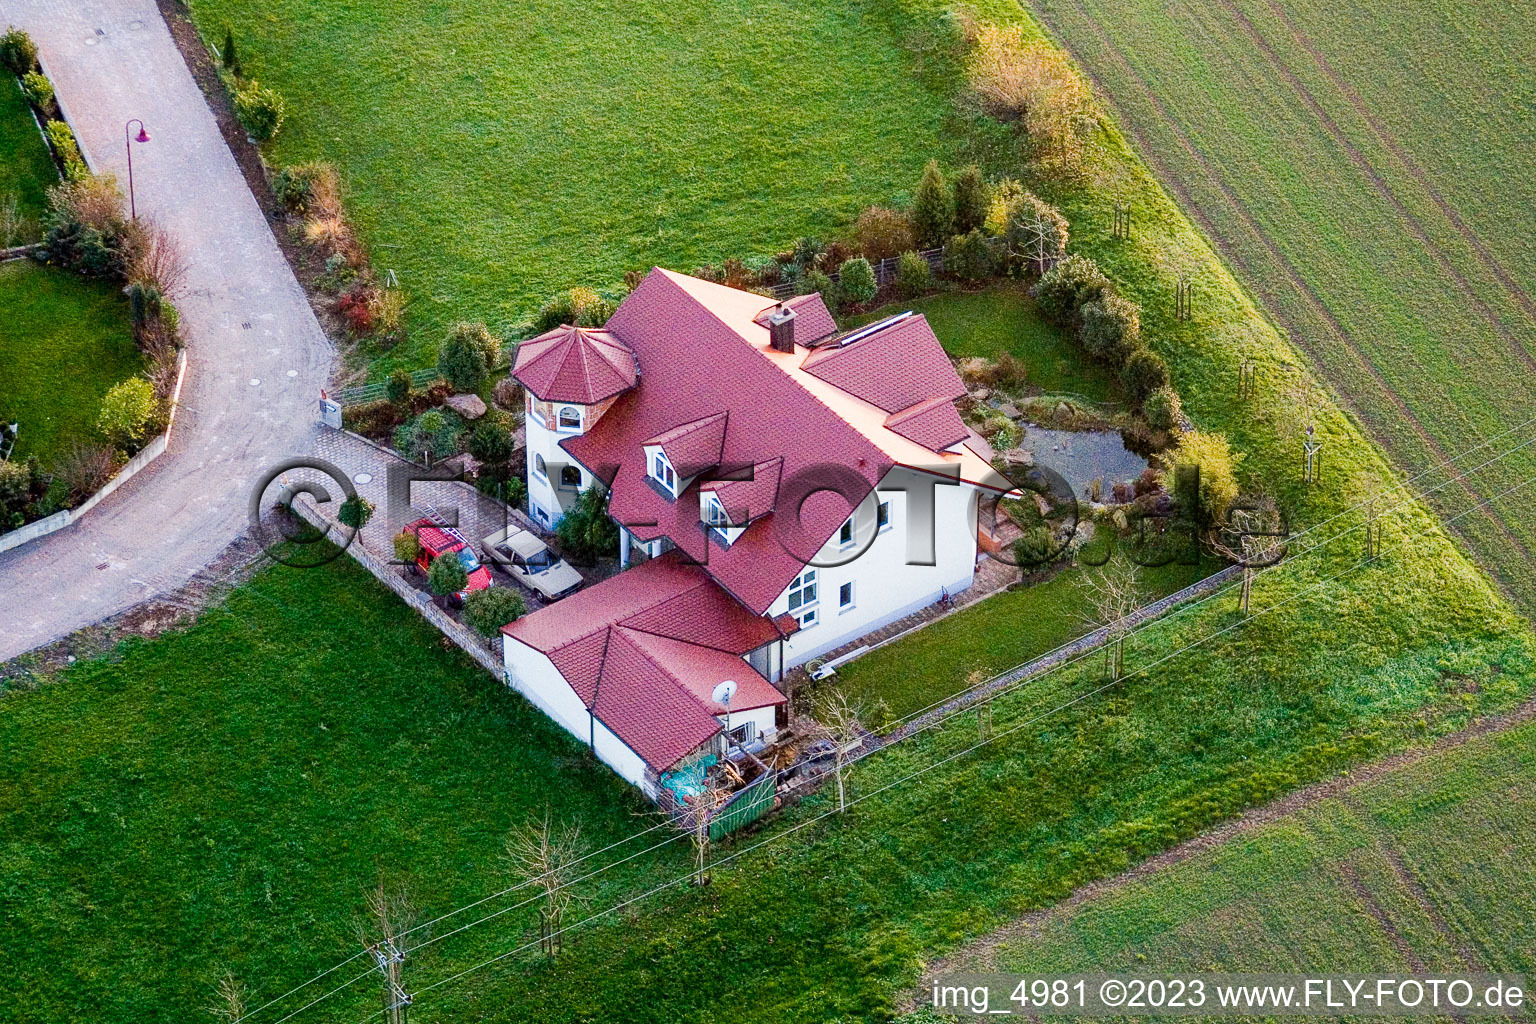 Freckenfeld im Bundesland Rheinland-Pfalz, Deutschland von einer Drohne aus